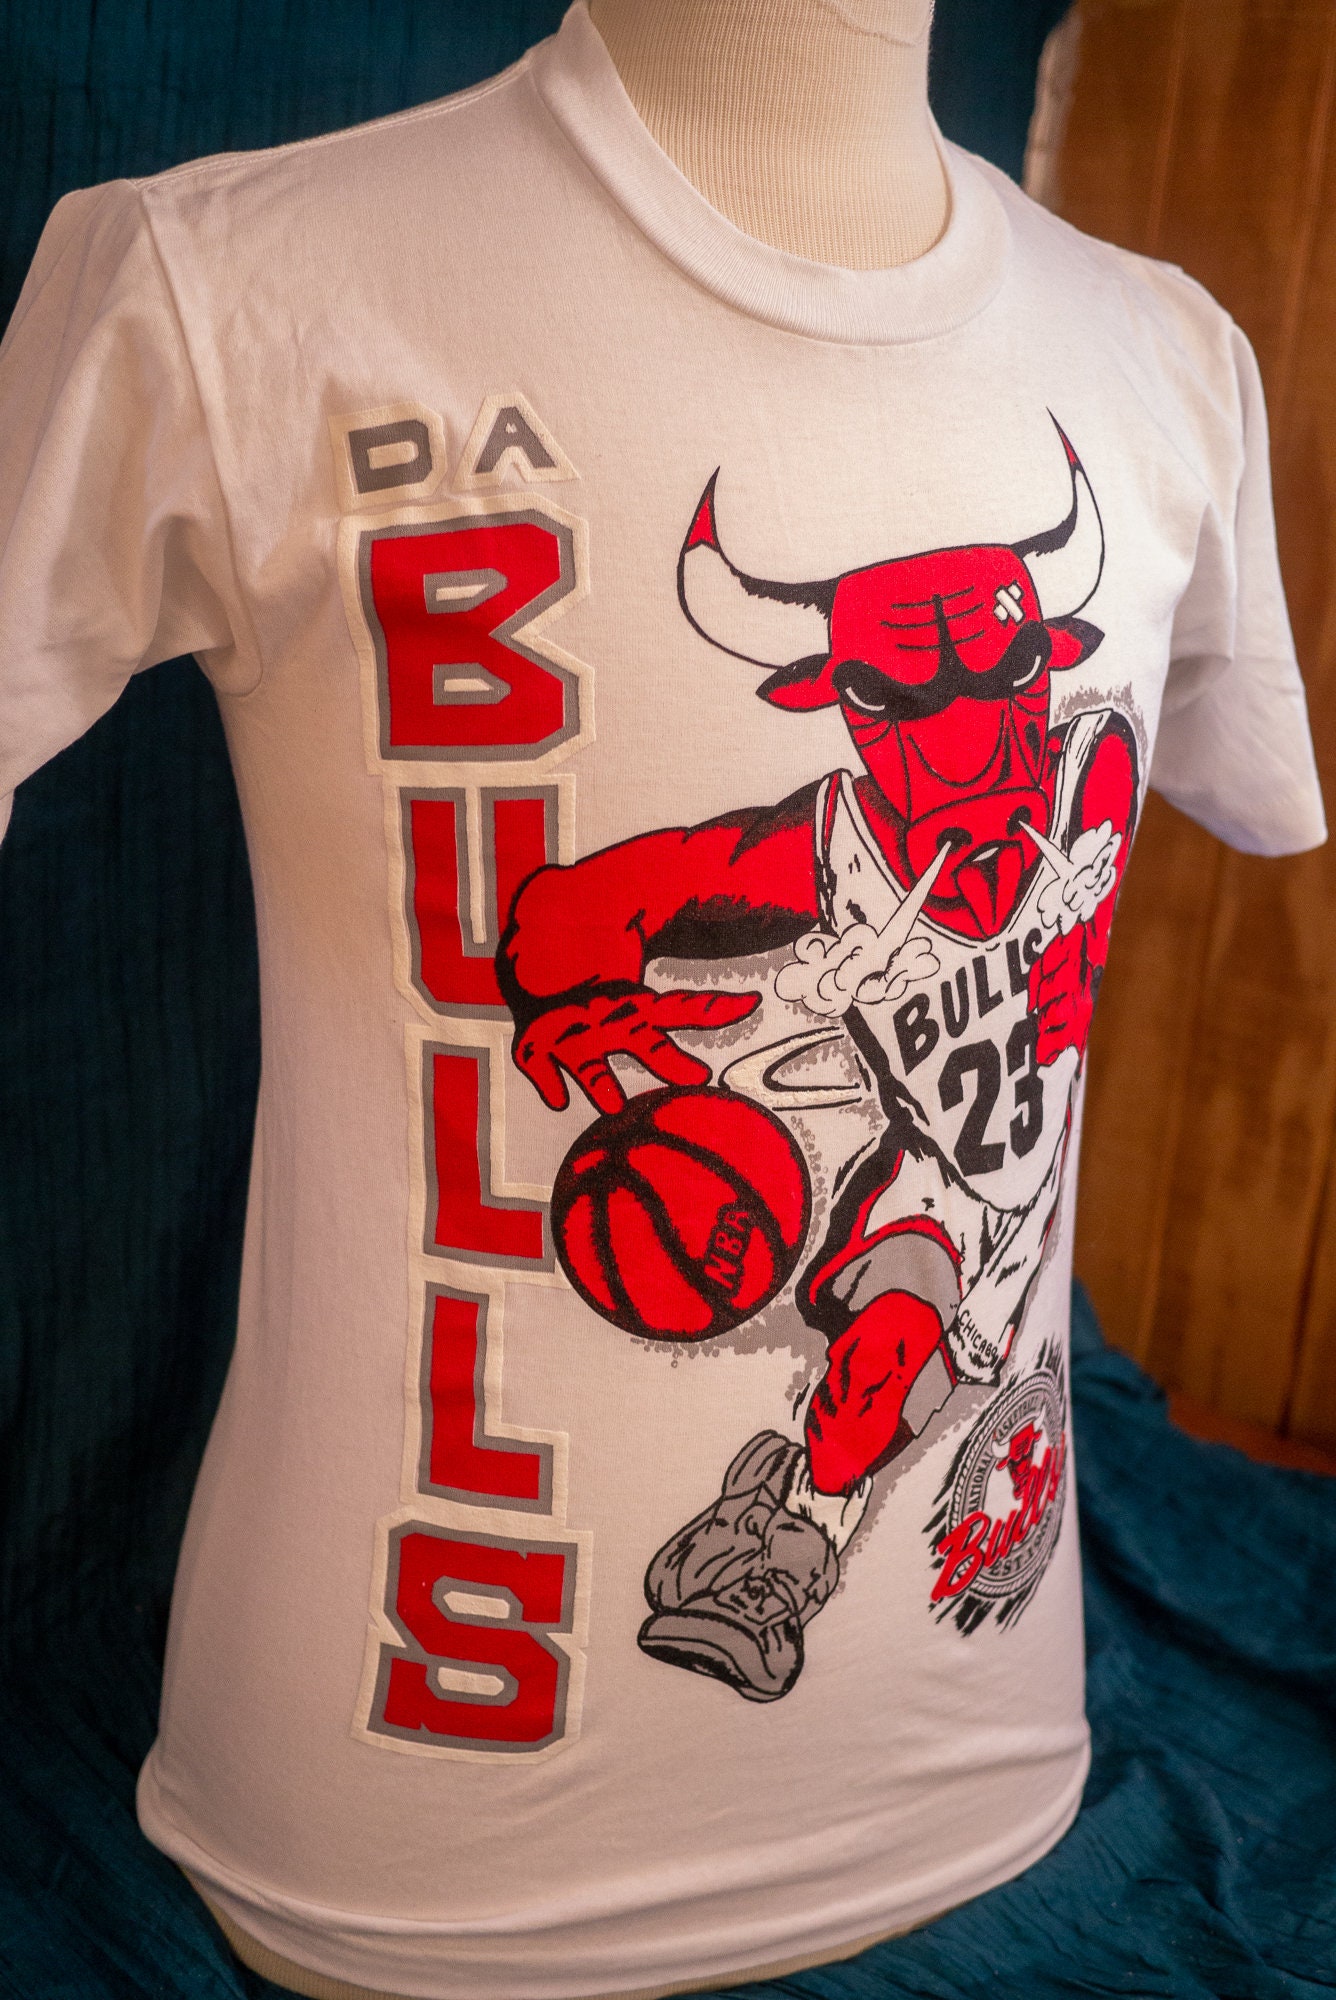 Vintage Chicago bulls tshirt, #bulls #chicago #tshirt